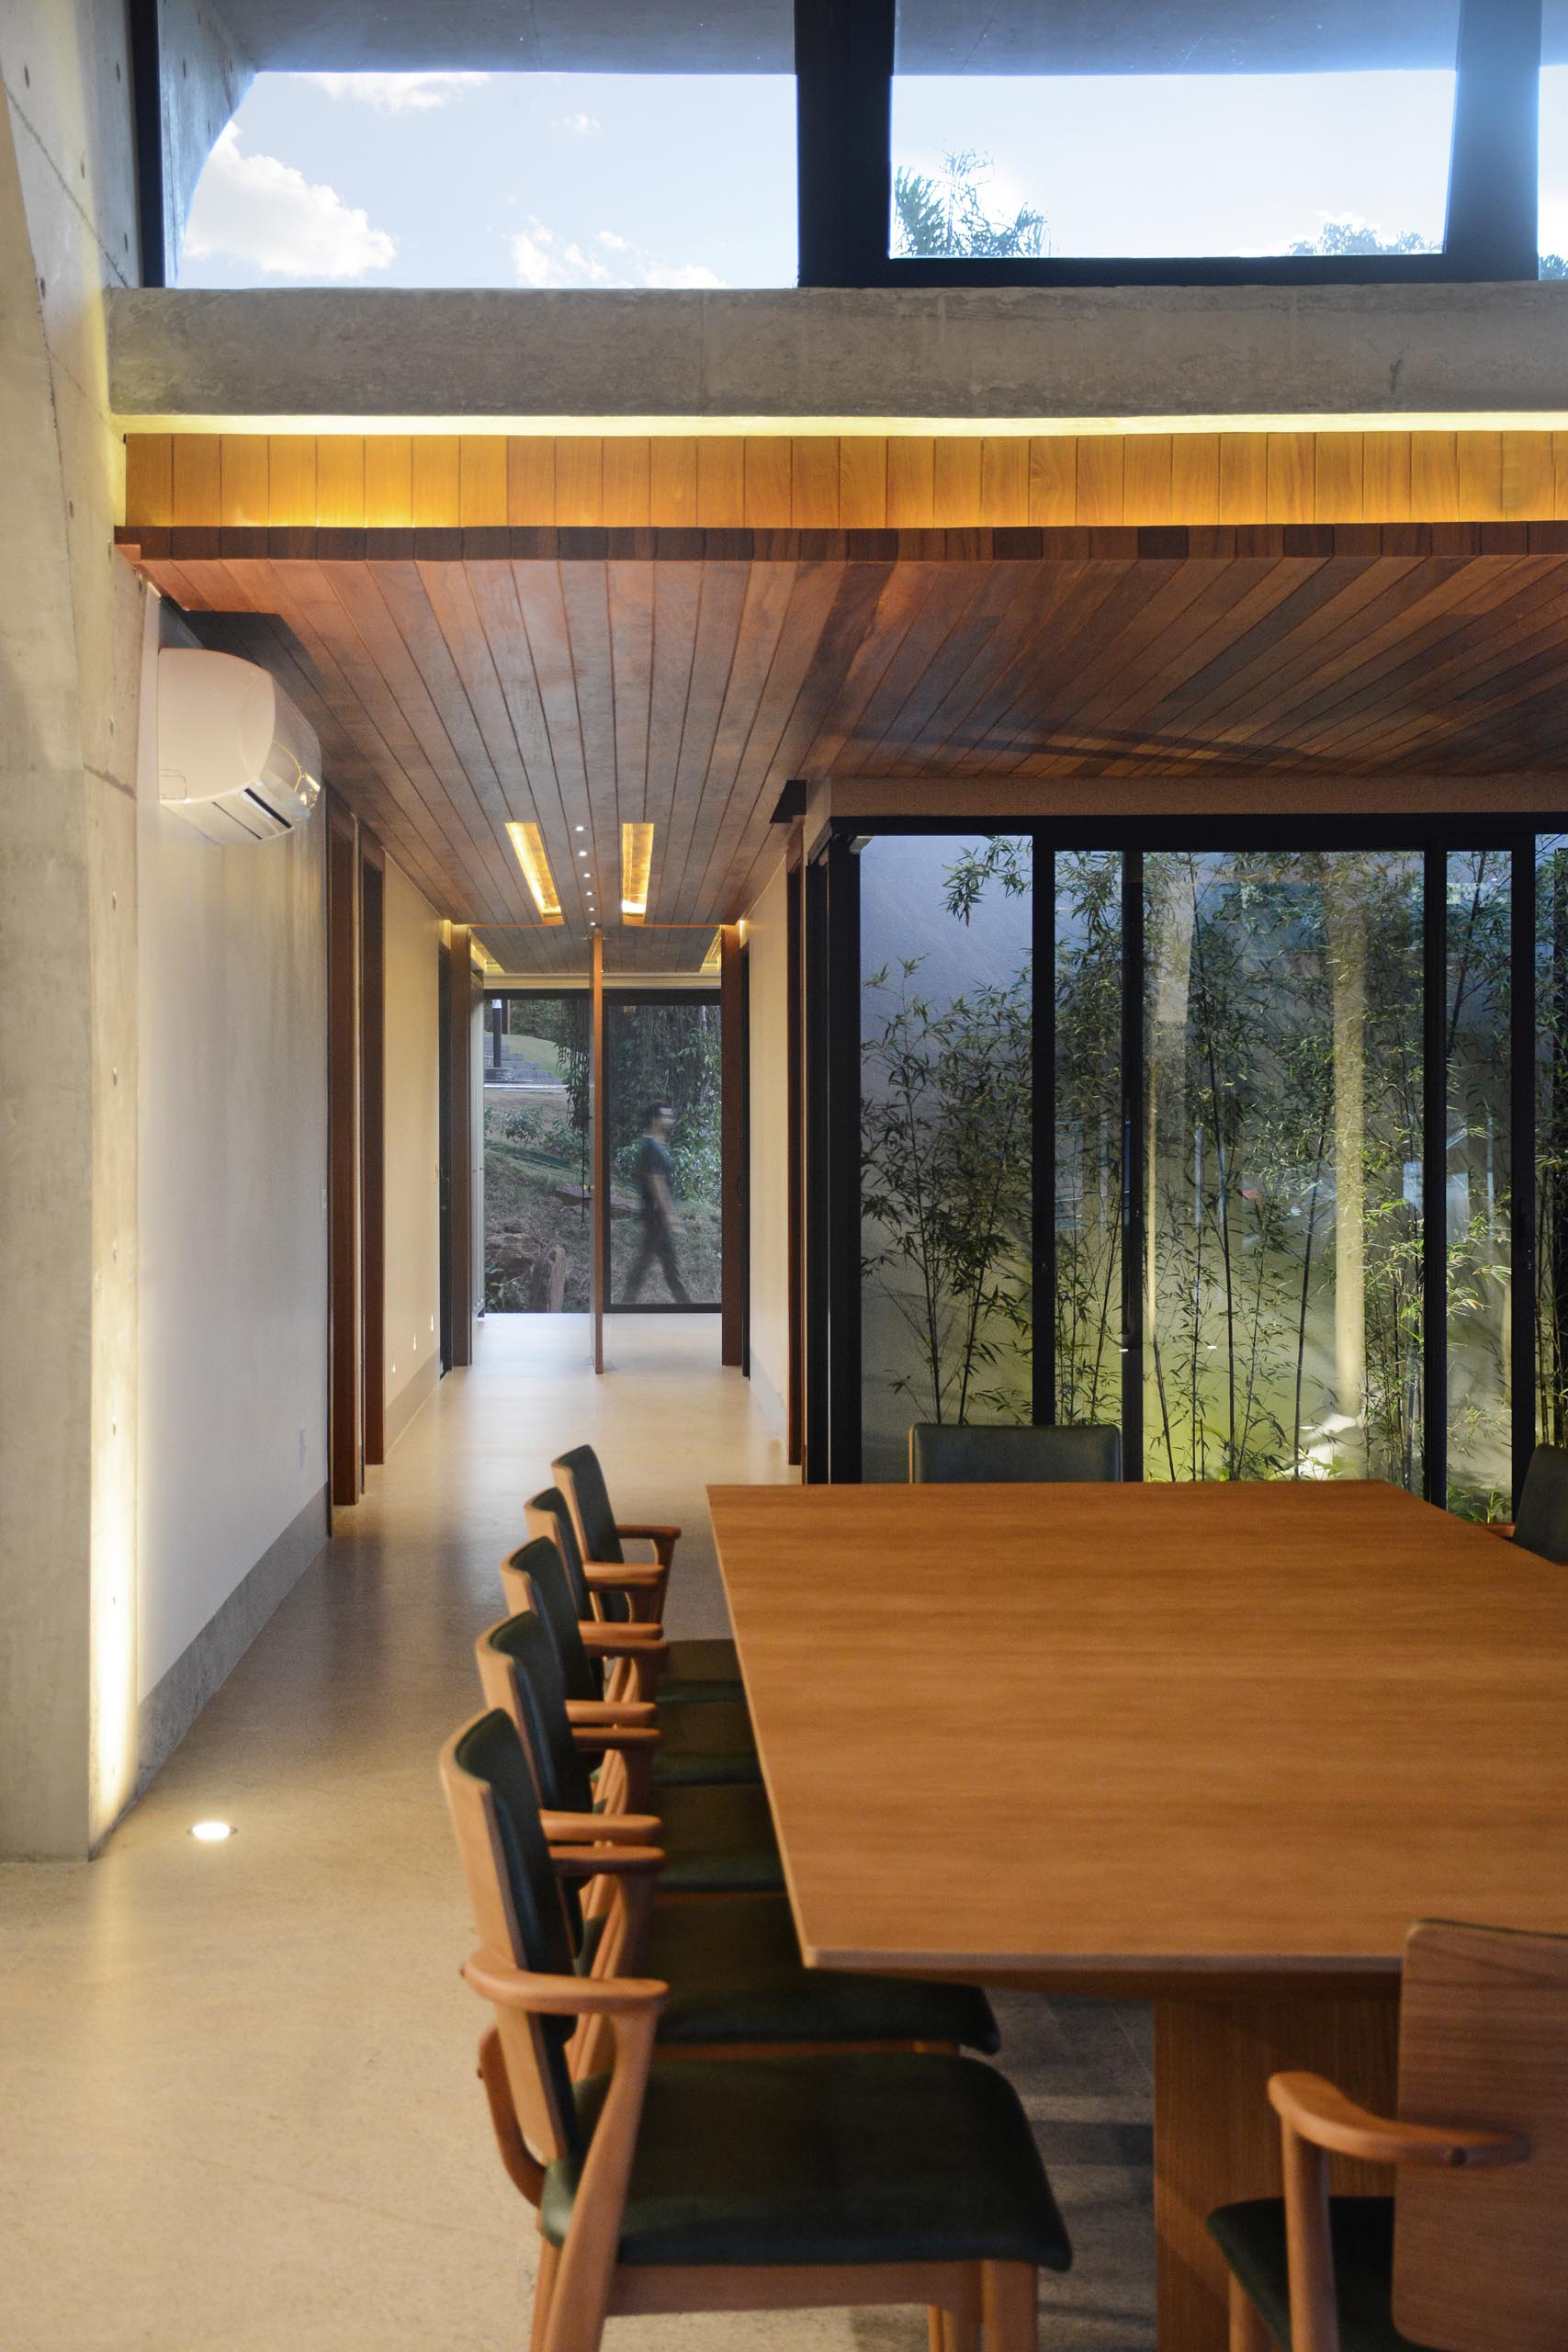 Распашная входная дверь приветствует людей в доме, а деревянный потолок с подсветкой добавляет интерьеру ощущение тепла.